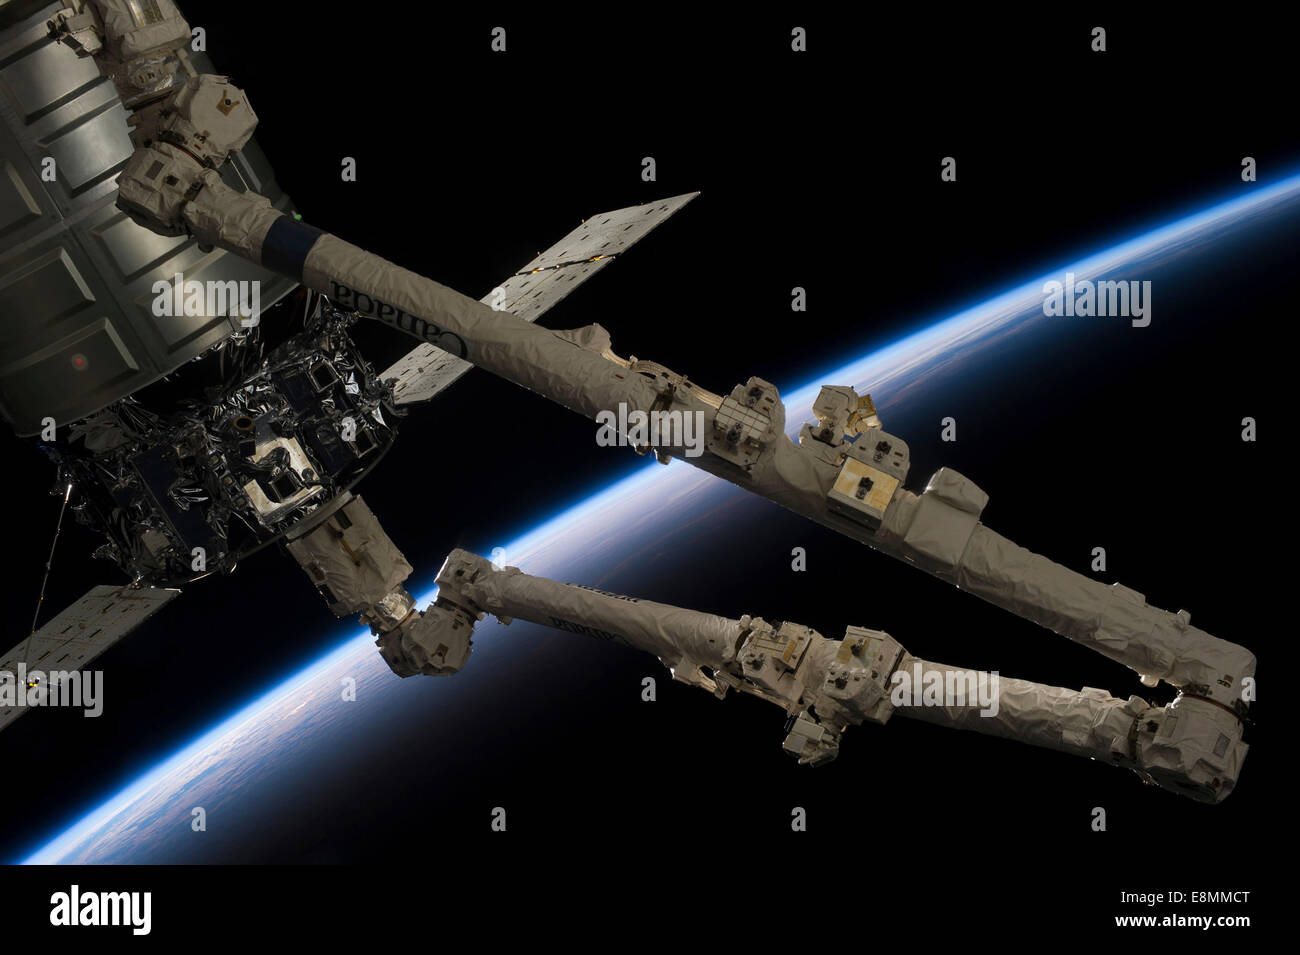 Ottobre 22, 2013 - La Stazione Spaziale Internazionale il Canadarm2 si appresta a rilasciare il Orbital Sciences' Cygnus imbarcazioni commerciali Foto Stock